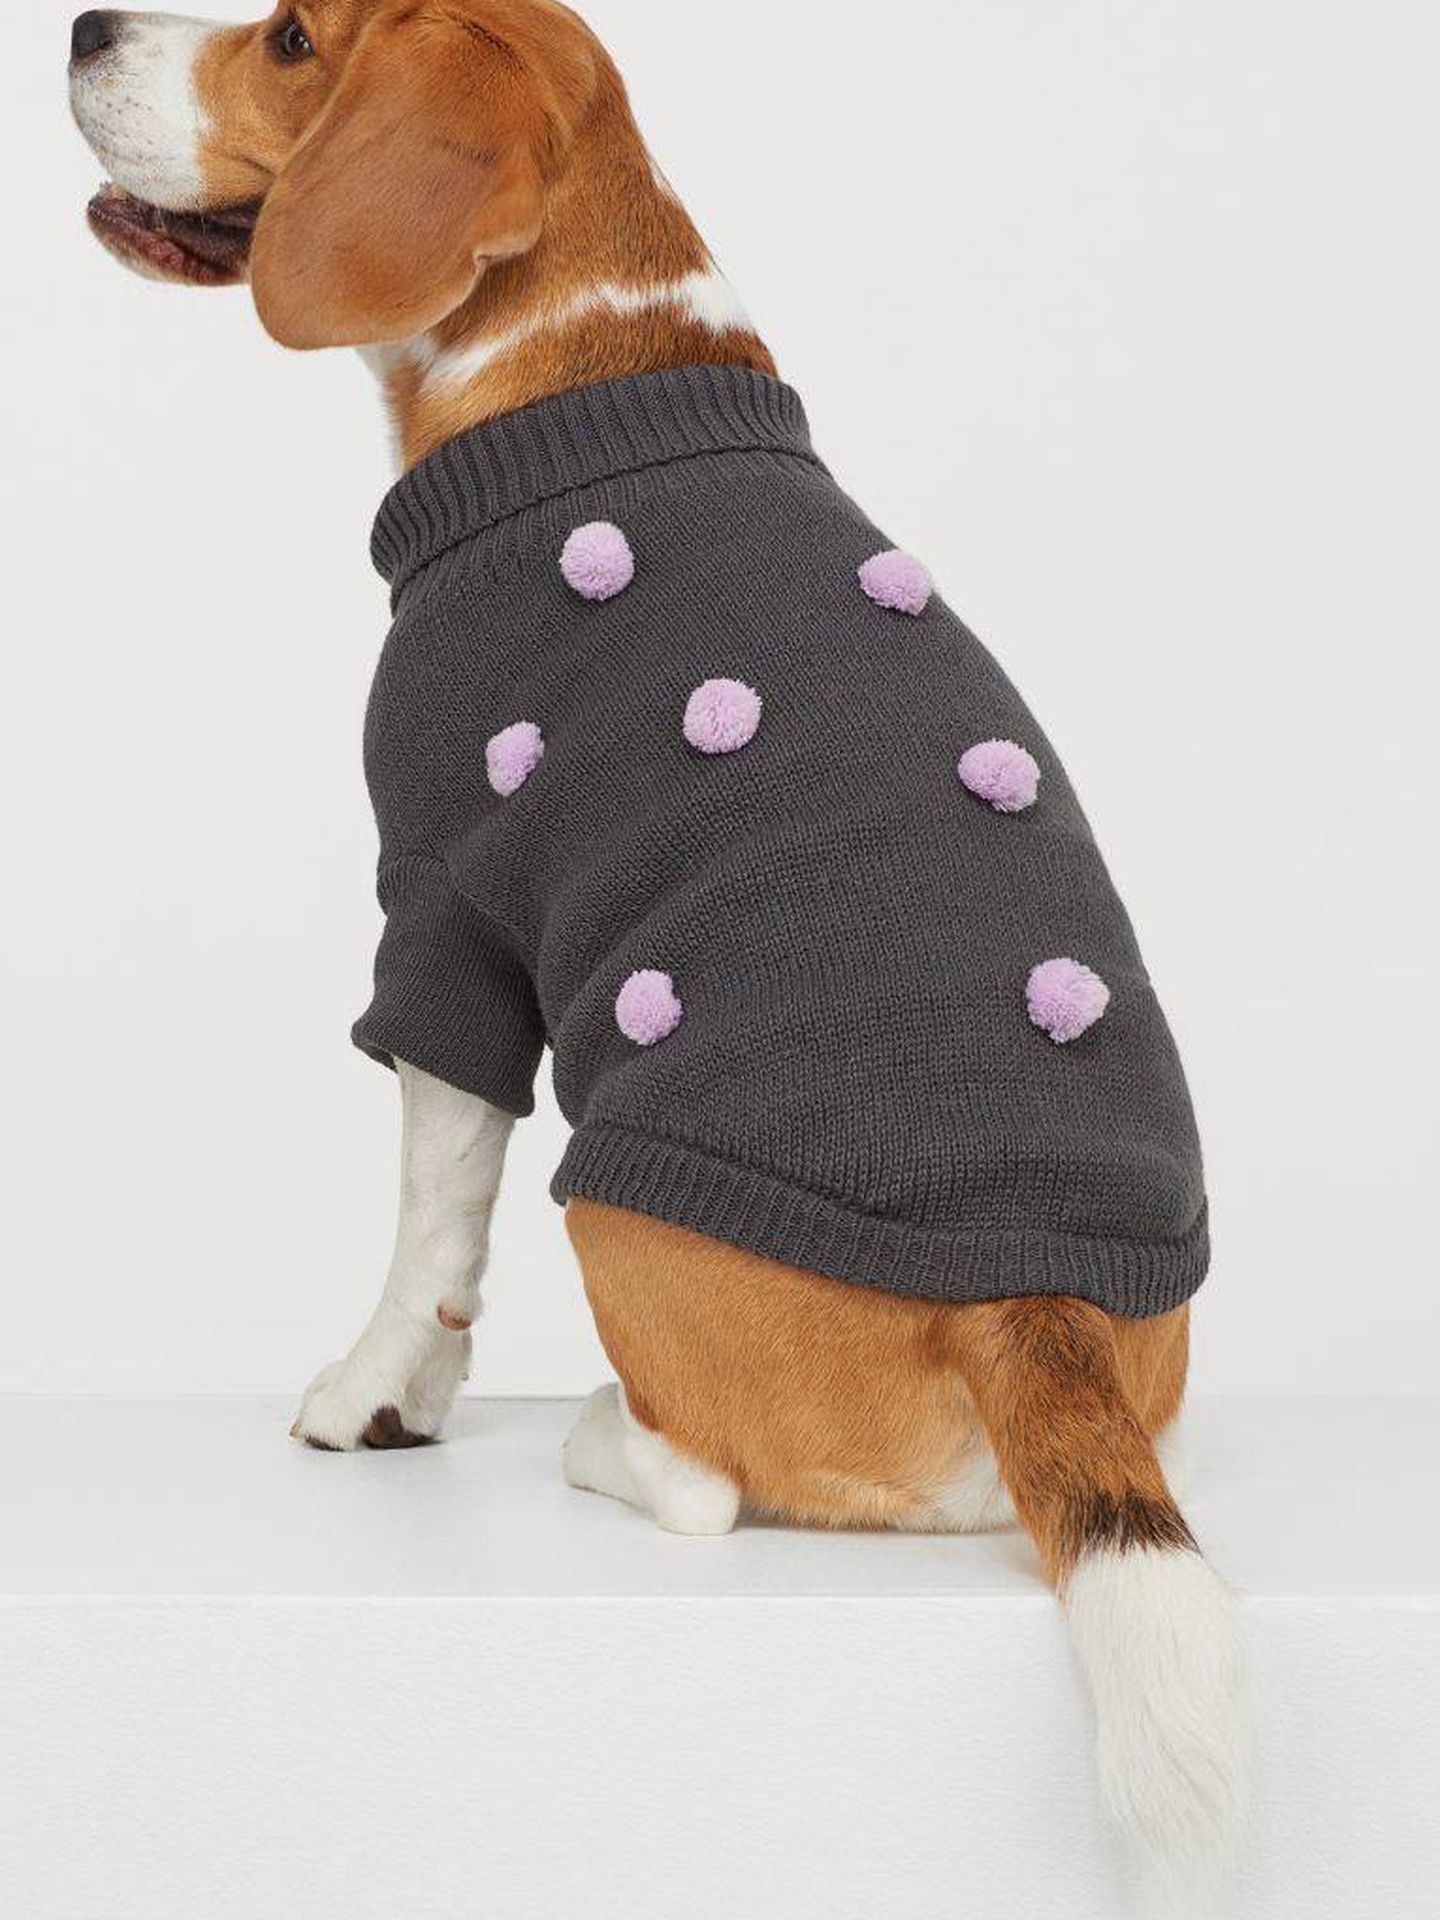 H&M quiere que tu perro vaya la moda esta colección prendas sostenibles